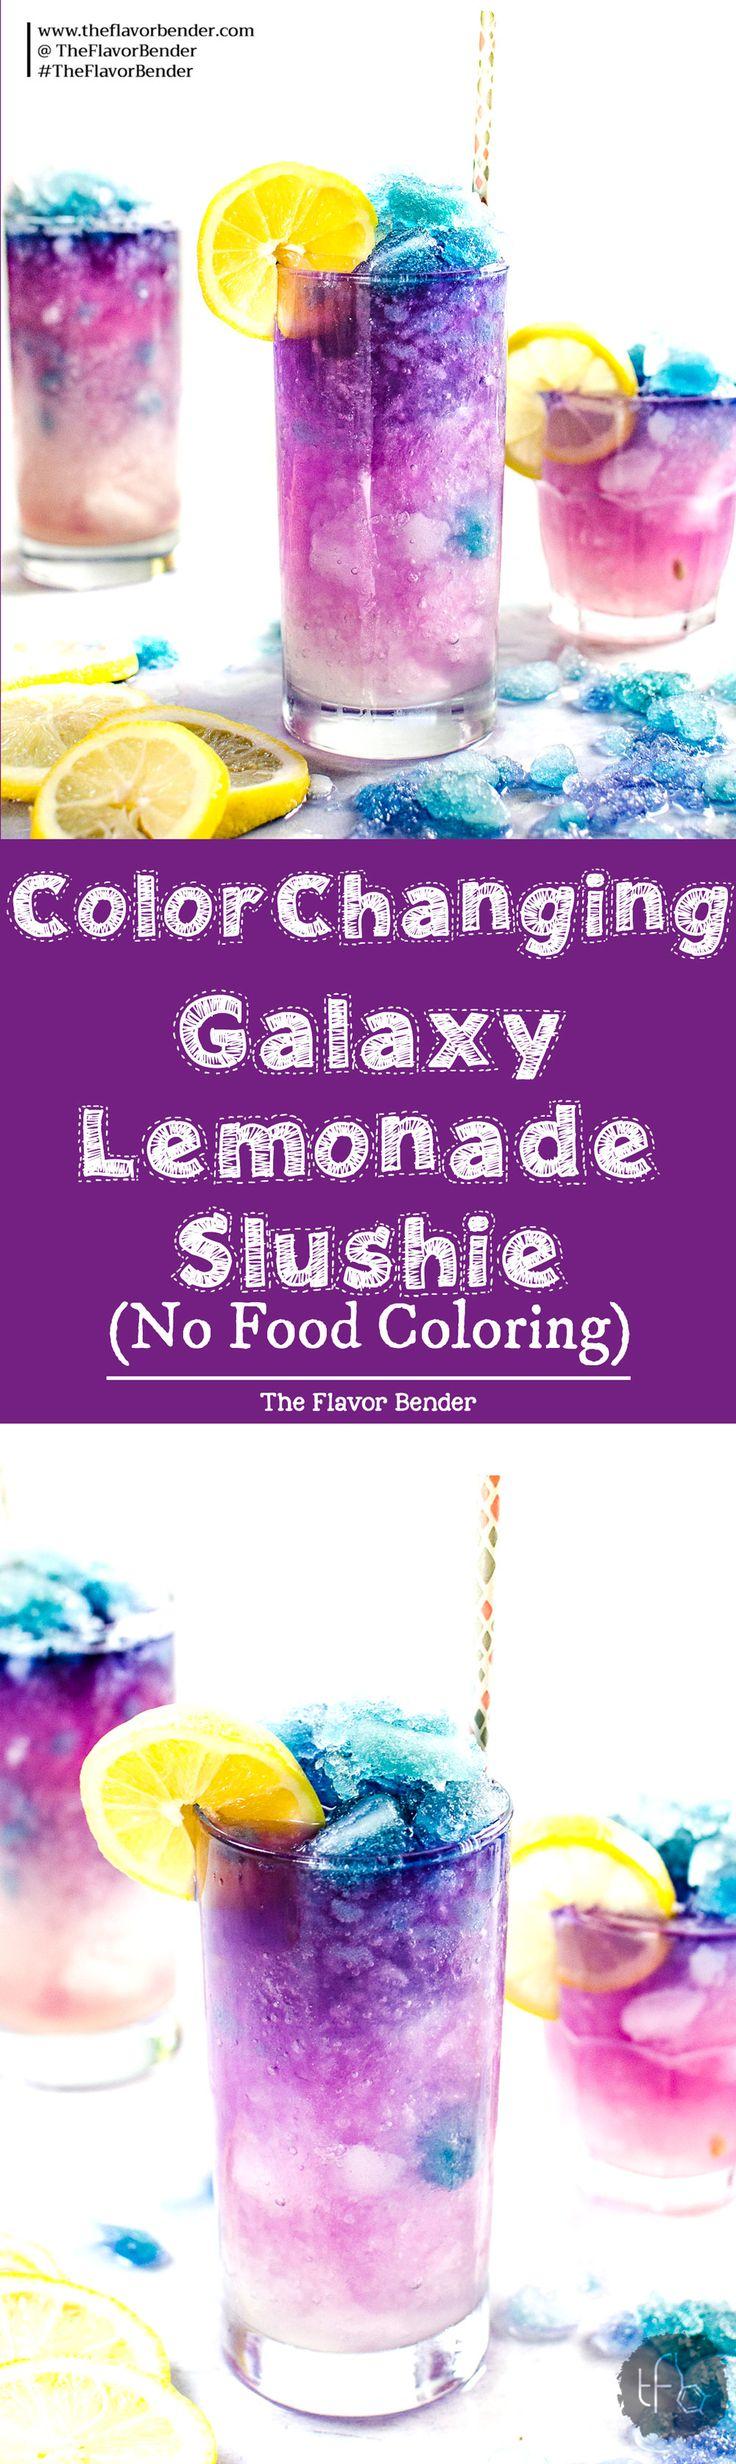 زفاف - Color Changing Lemonade Slushie (Galaxy Lemonade Slushie)